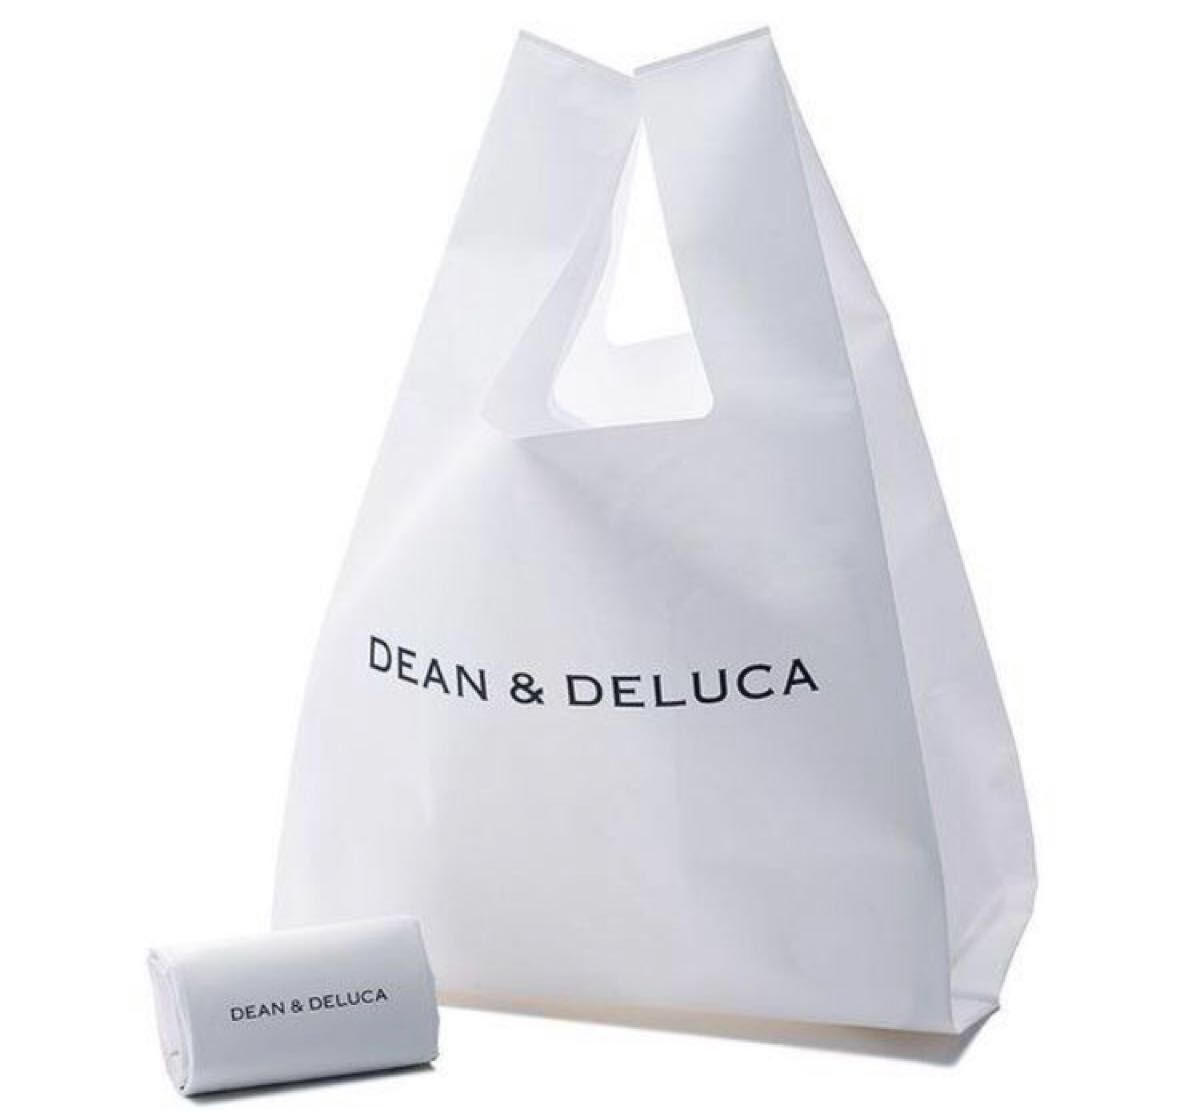 新品未開封品 公式 DEAN&DELUCA ディーン&デルーカ ミニマムエコバッグ ホワイト 白  1個 エコバック クーポン